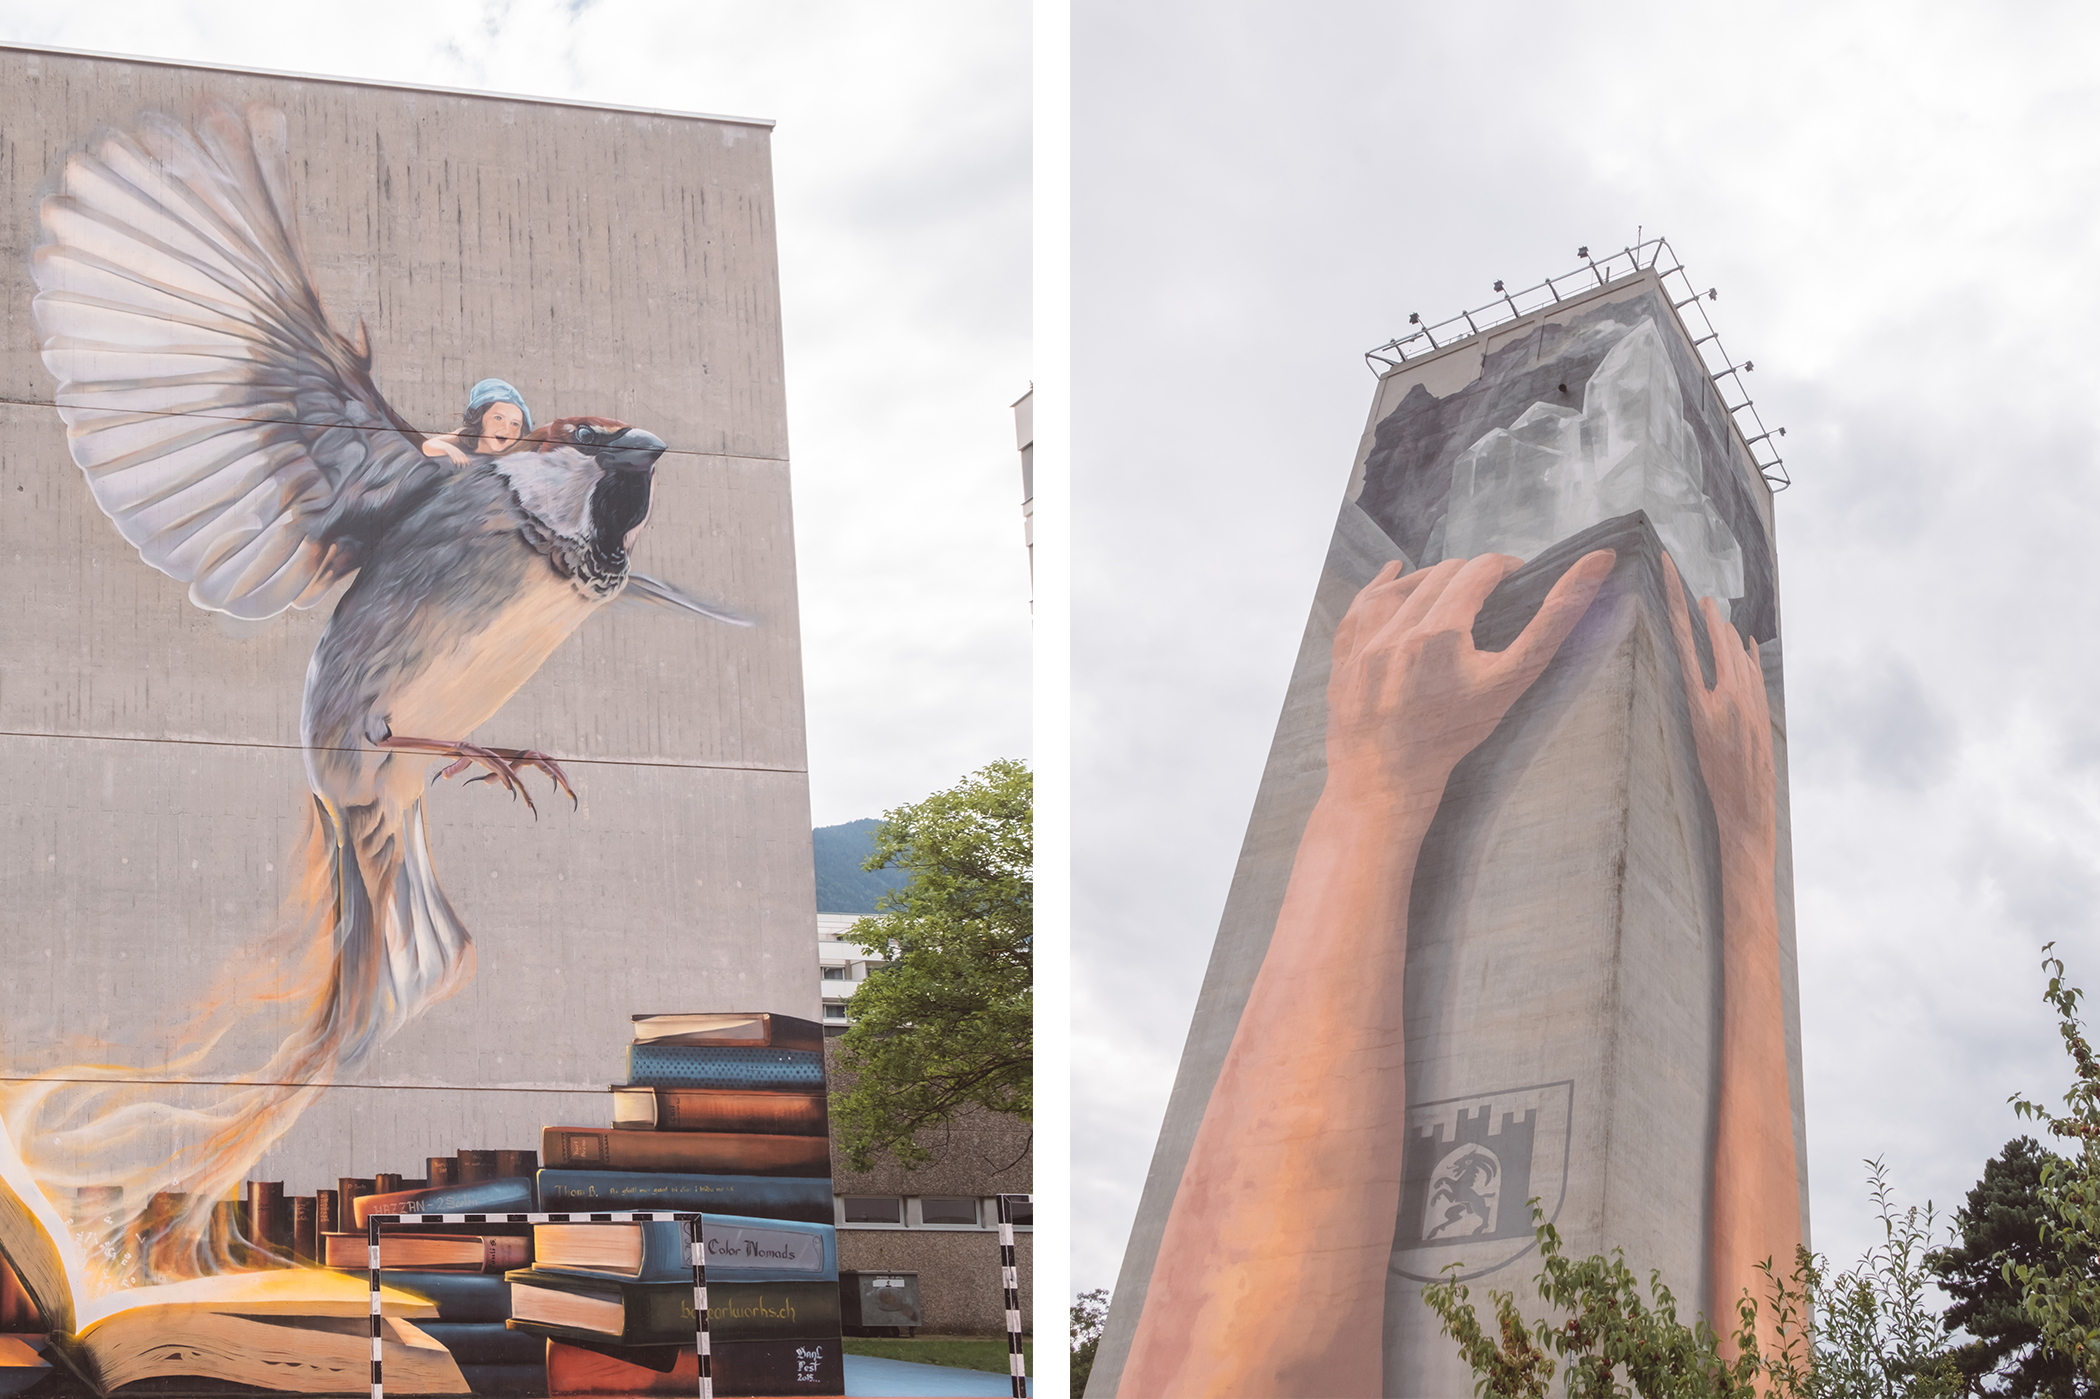 Coire, haut lieu du street art en Suisse